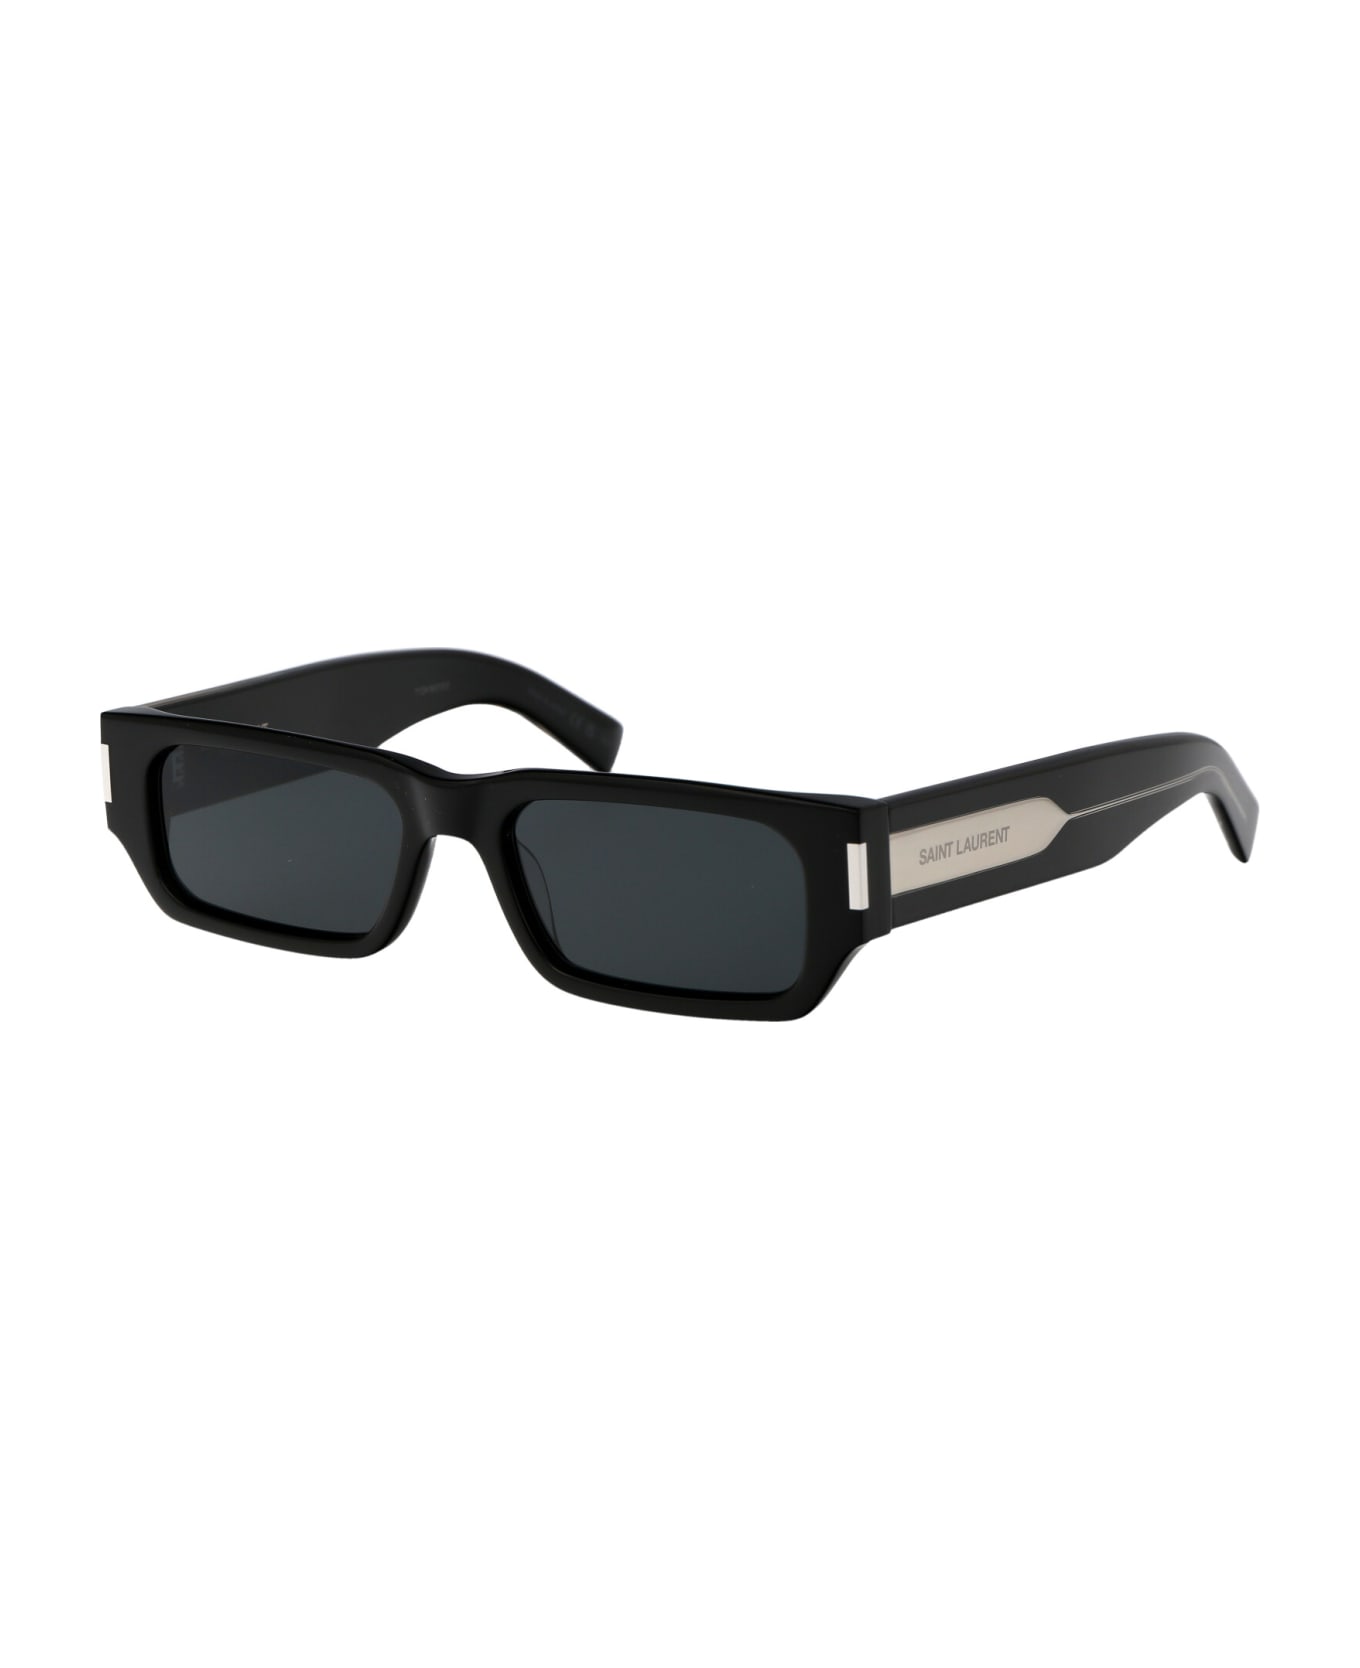 Saint Laurent Eyewear Sl 660 Sunglasses - 001 BLACK CRYSTAL BLACK